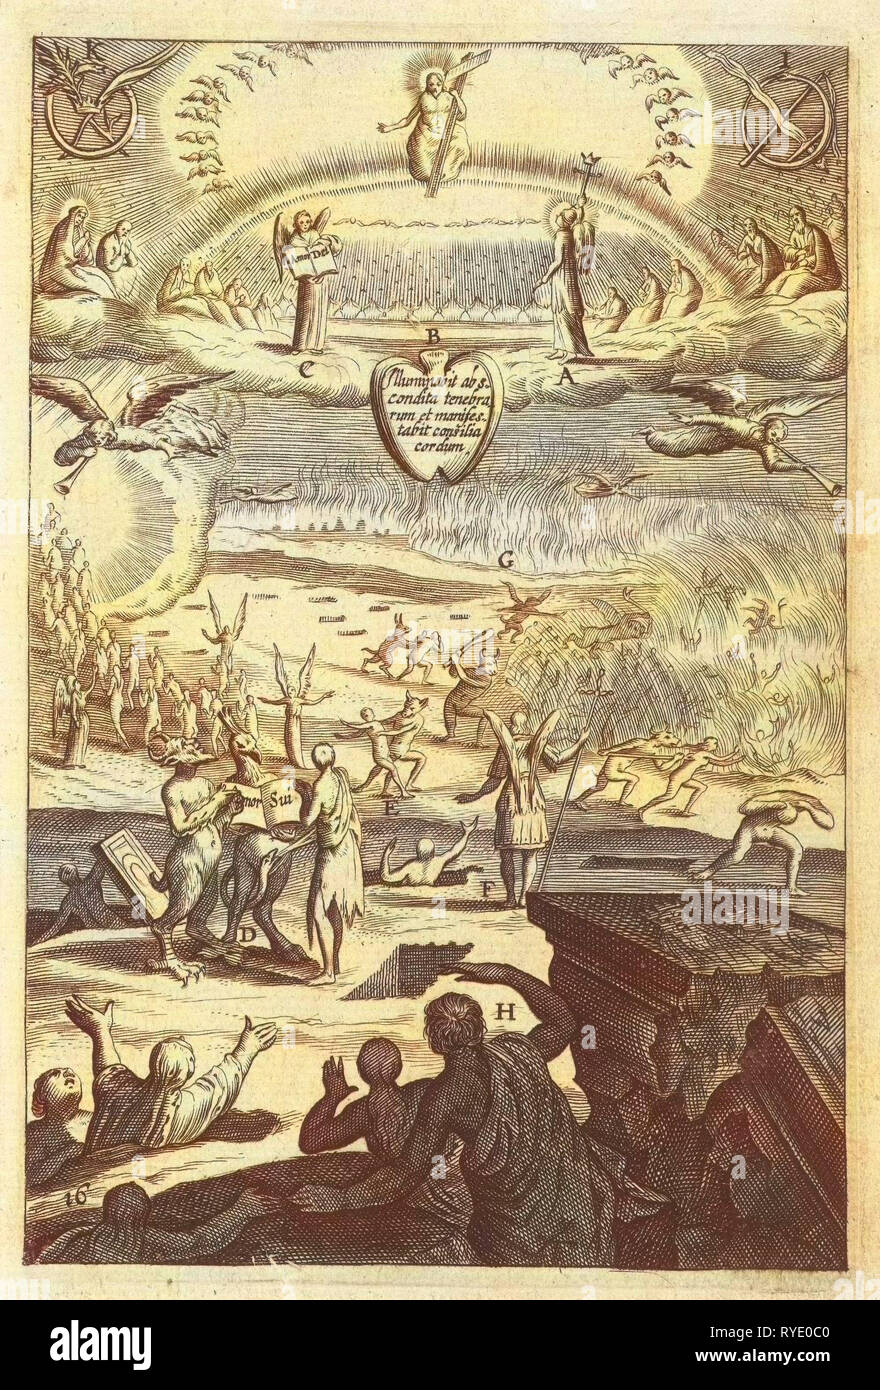 Emblem mit dem abschließenden Urteil für die Betrachtung des Lebens in der Tugend oder Sünde, Boëtius Adamsz. Bolswert, Anonym, Hendrik Aertssens, 1620 - 1623 Stockfoto